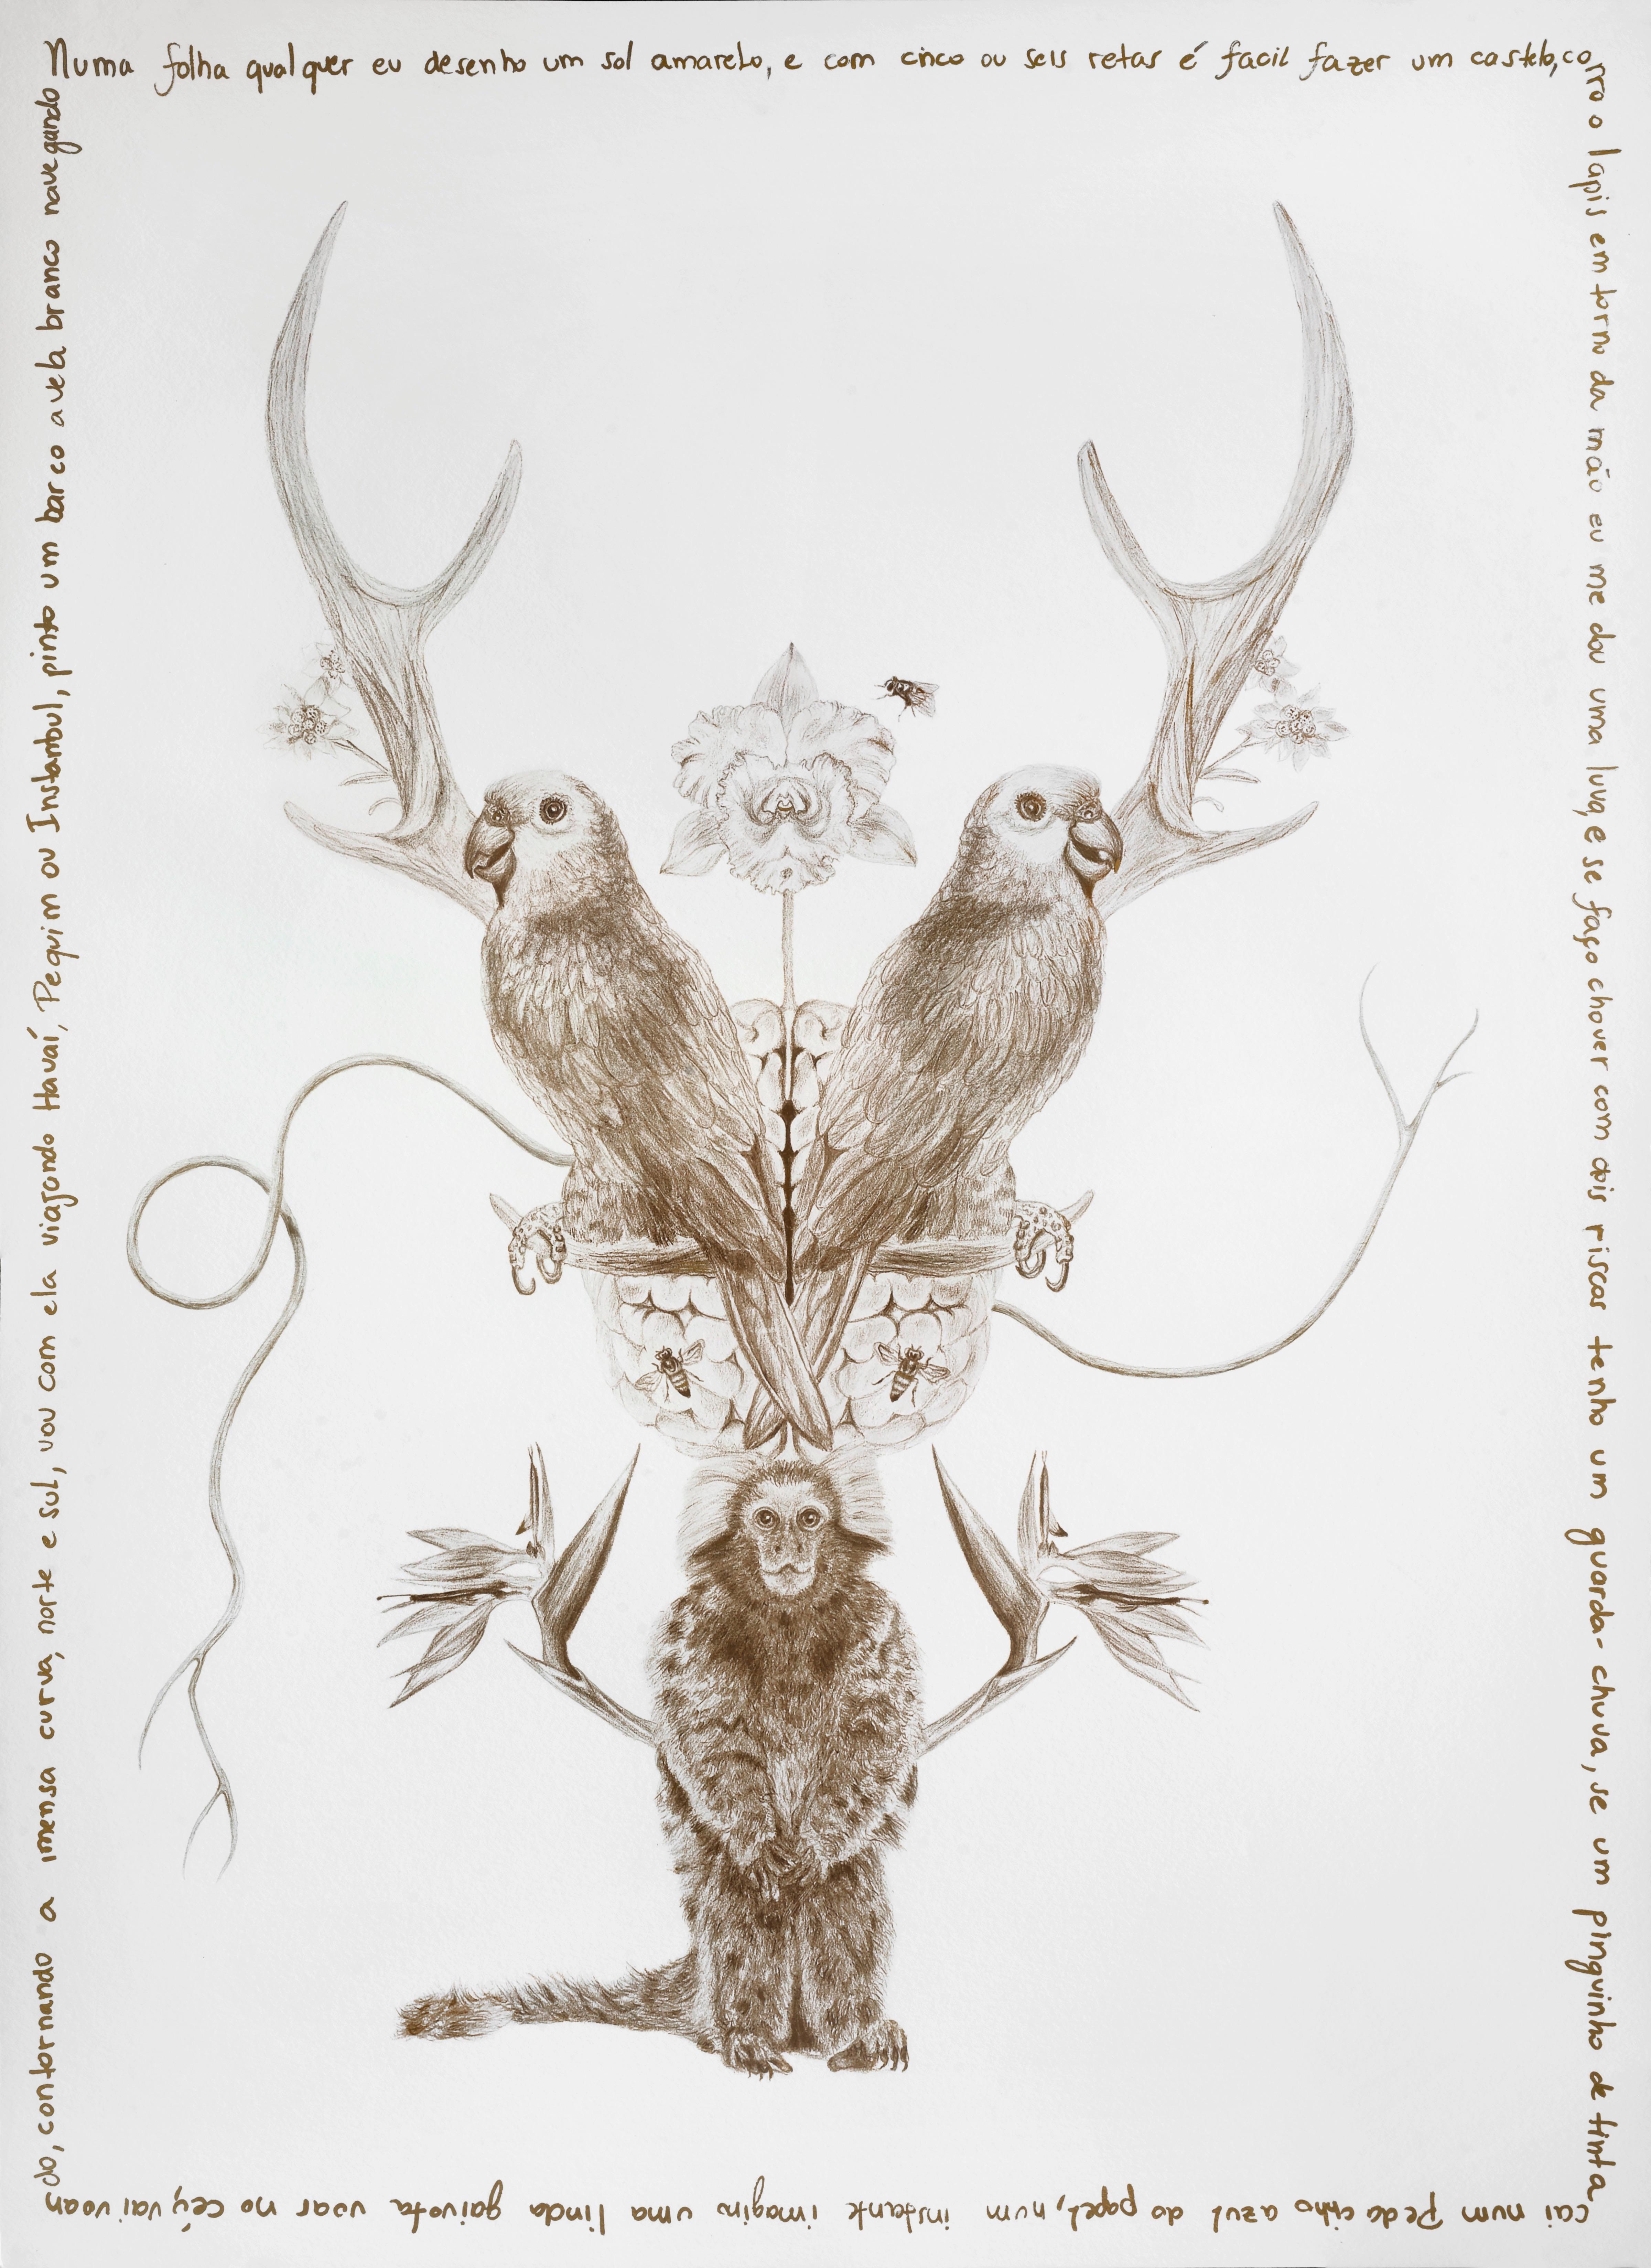 L'arbre de famille.  Des photographies figuratives sur supports mélangés ont été réalisées par l'artiste  - Naturalisme Mixed Media Art par Magda Von Hanau